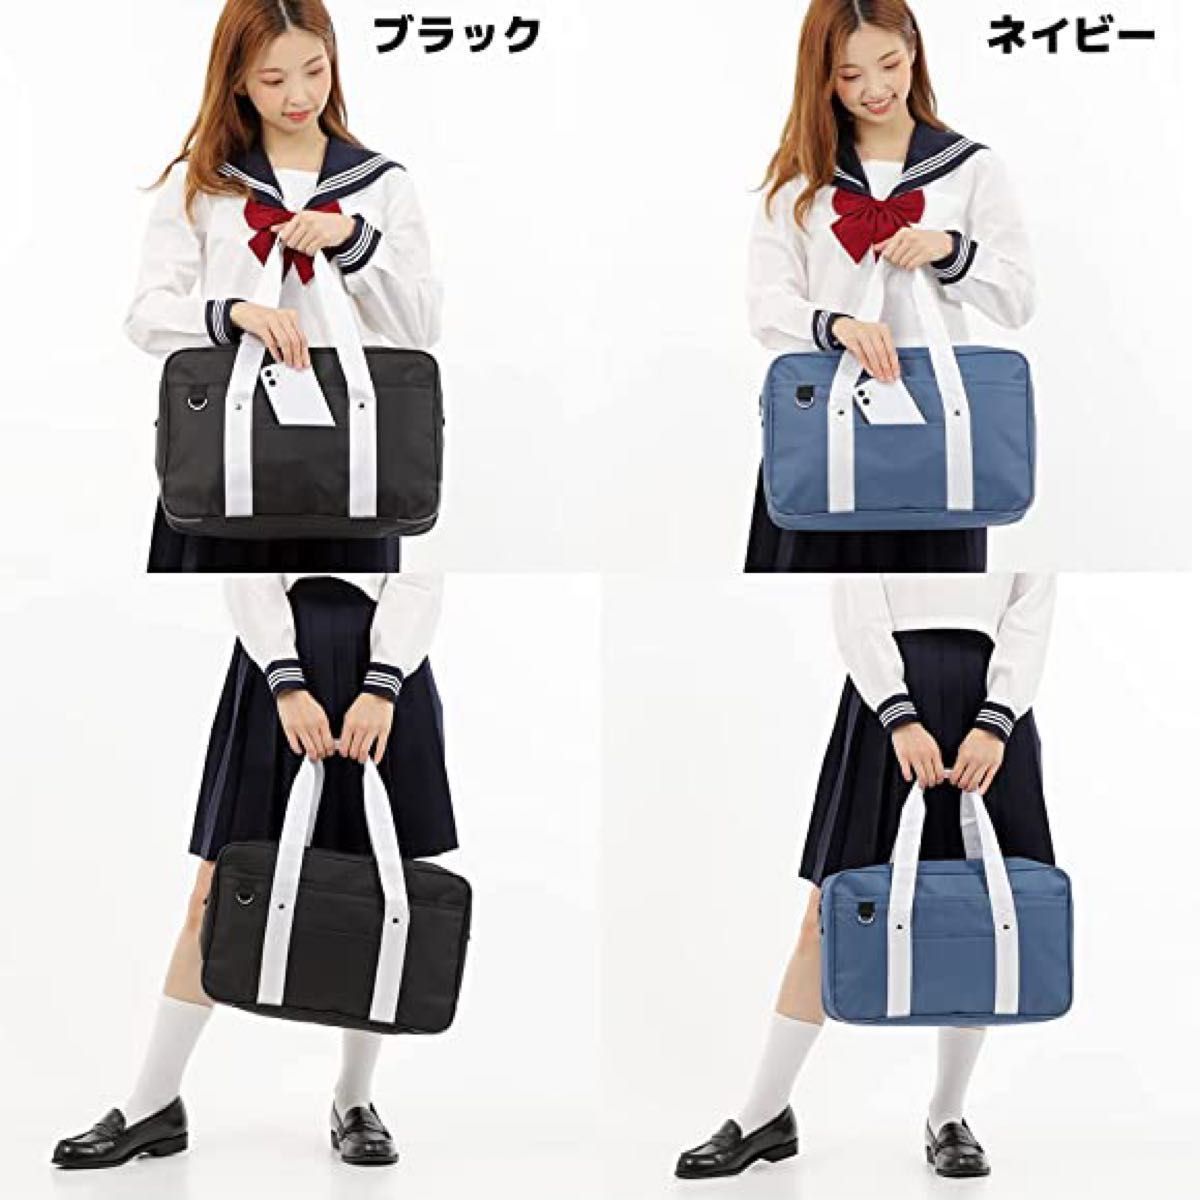 スクールバッグ　スクバ　ボストンバッグ　韓国　JK 男女兼用スクールバッグ 女子高生 学生カバン 通学カバン 手提げバッグ